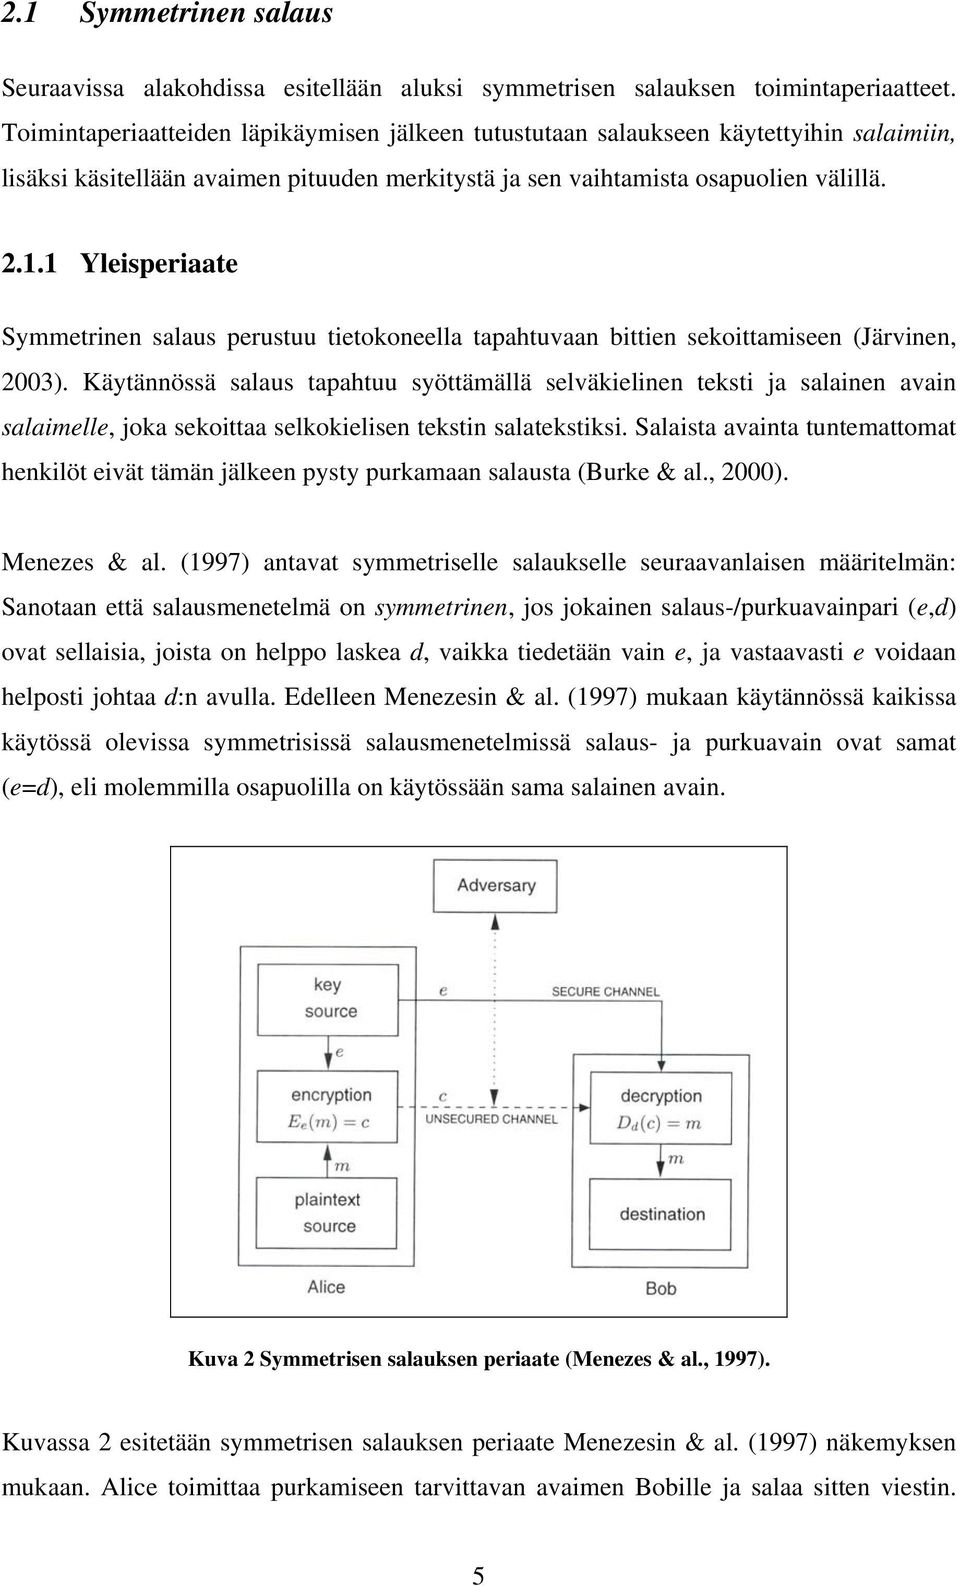 1 Yleisperiaate Symmetrinen salaus perustuu tietokoneella tapahtuvaan bittien sekoittamiseen (Järvinen, 2003).